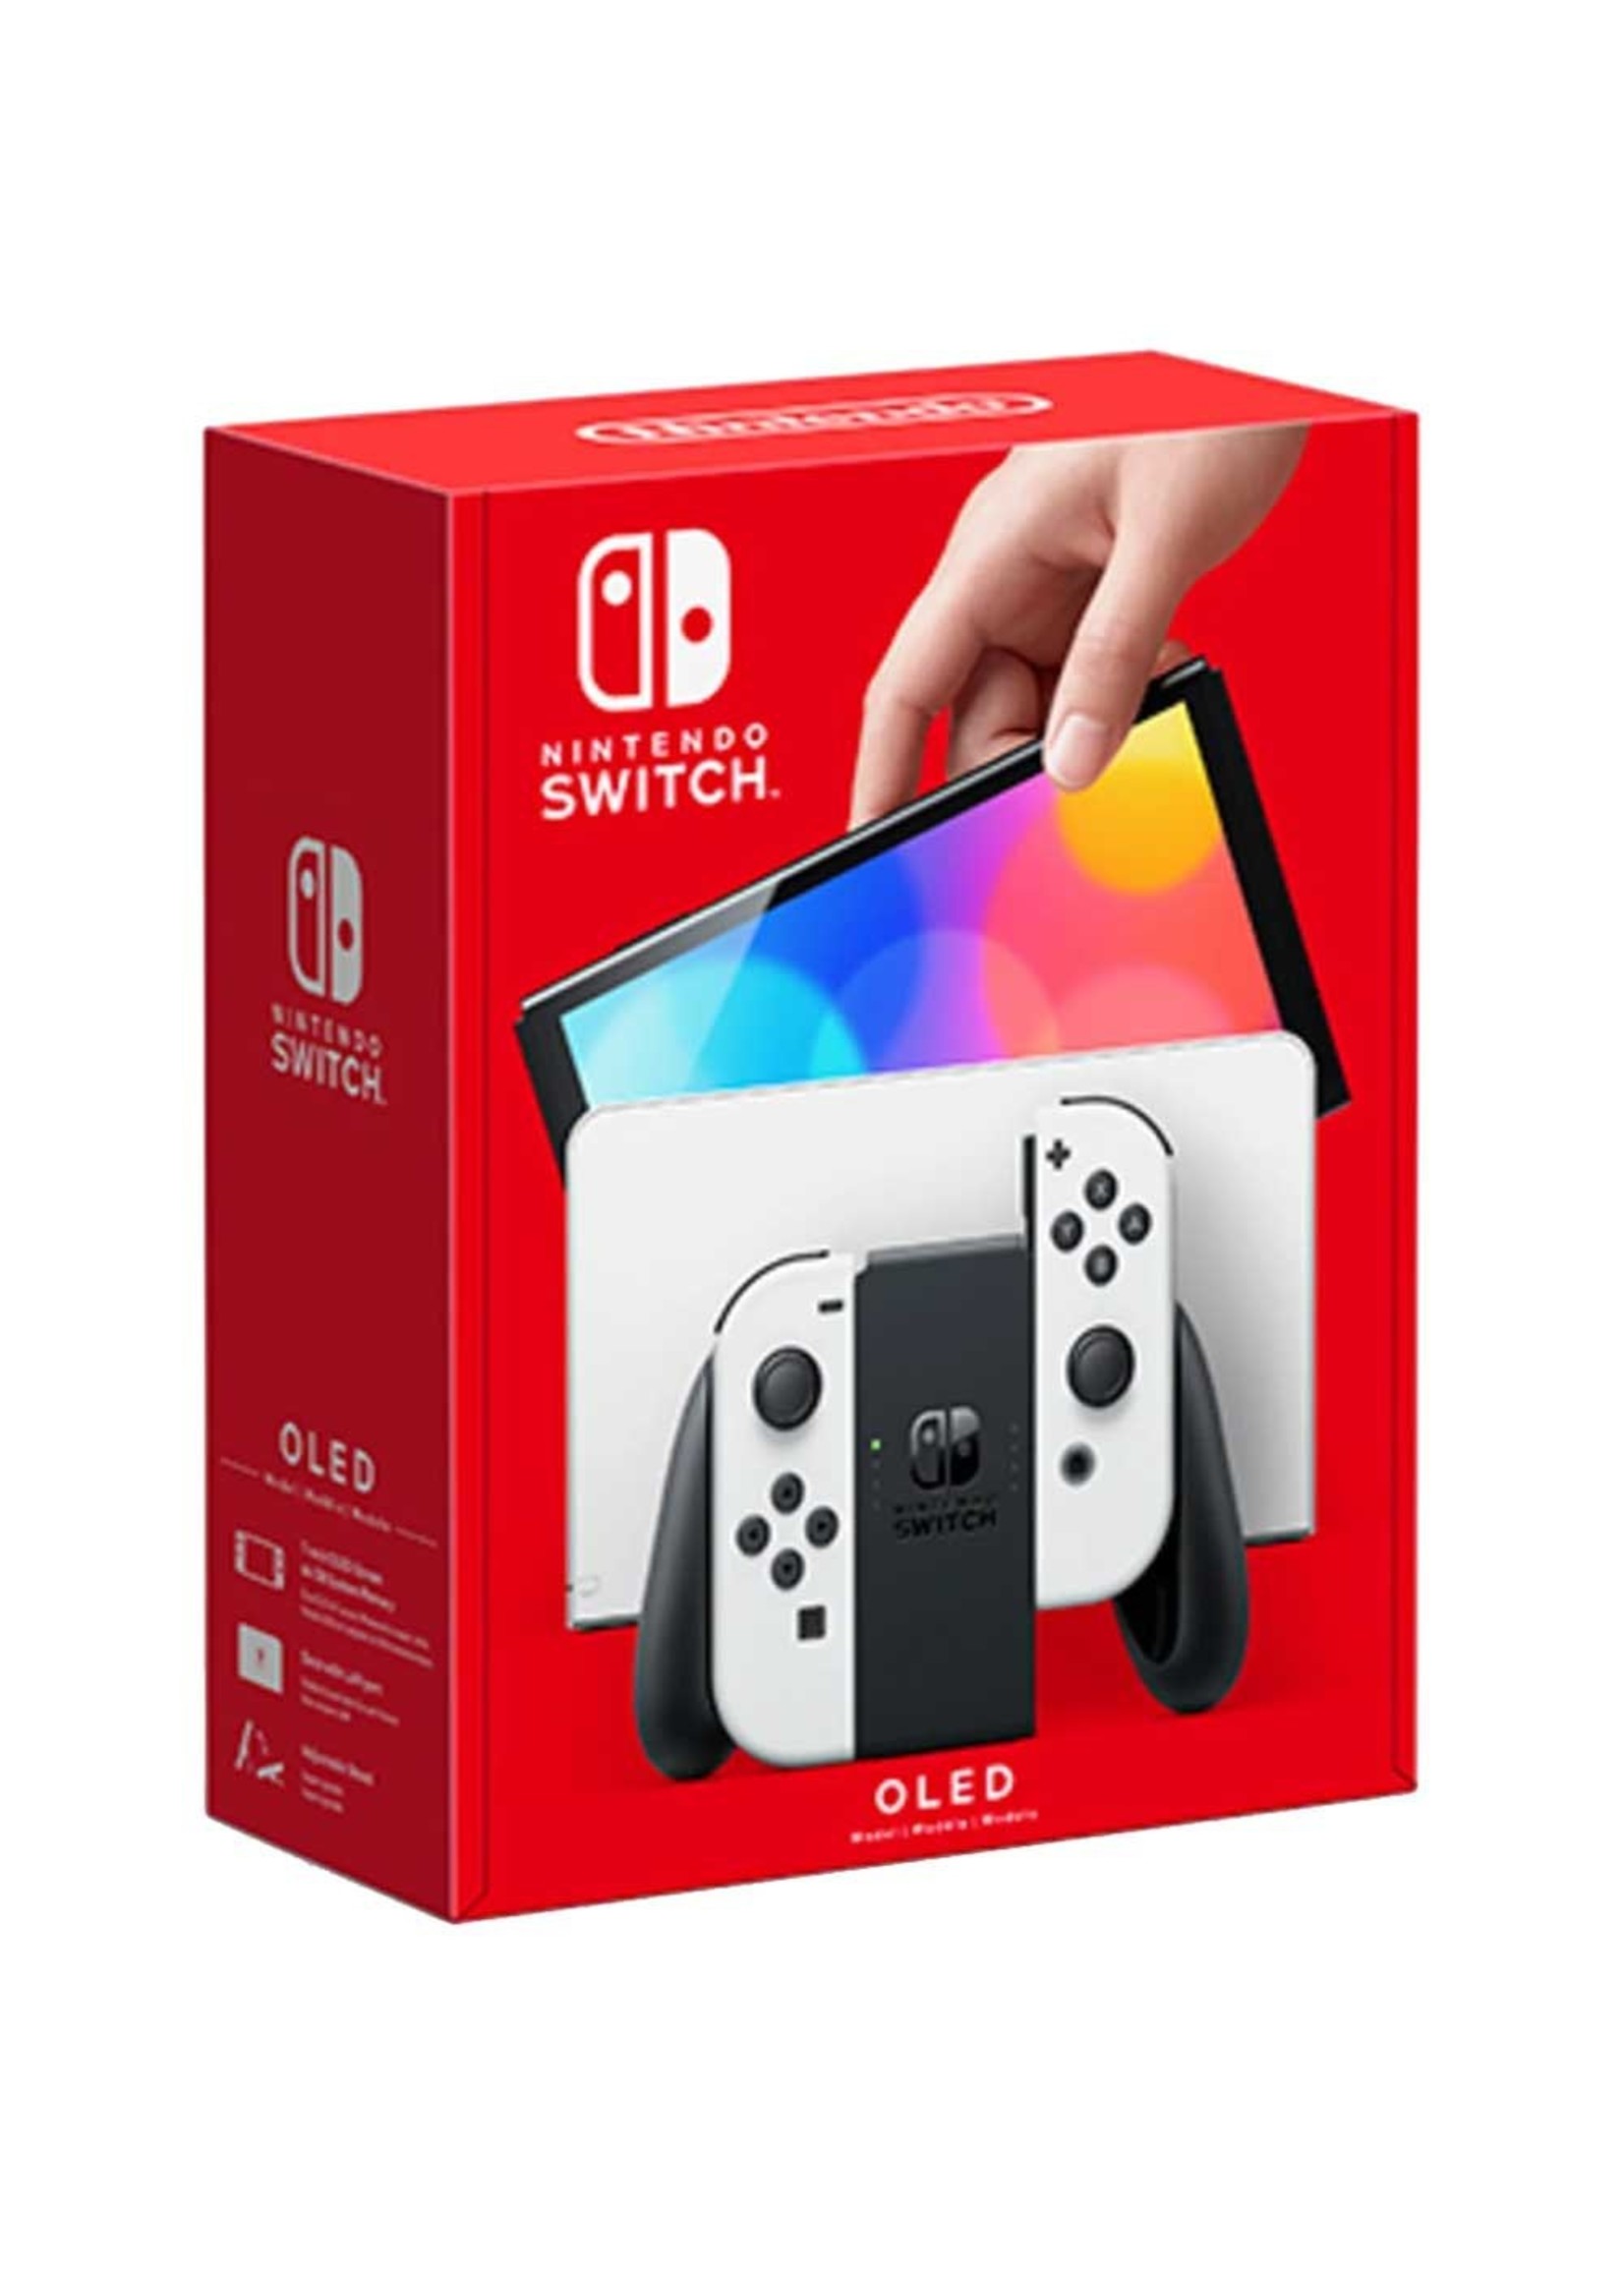 Nintendo Nintendo Switch System - OLED Model (White)